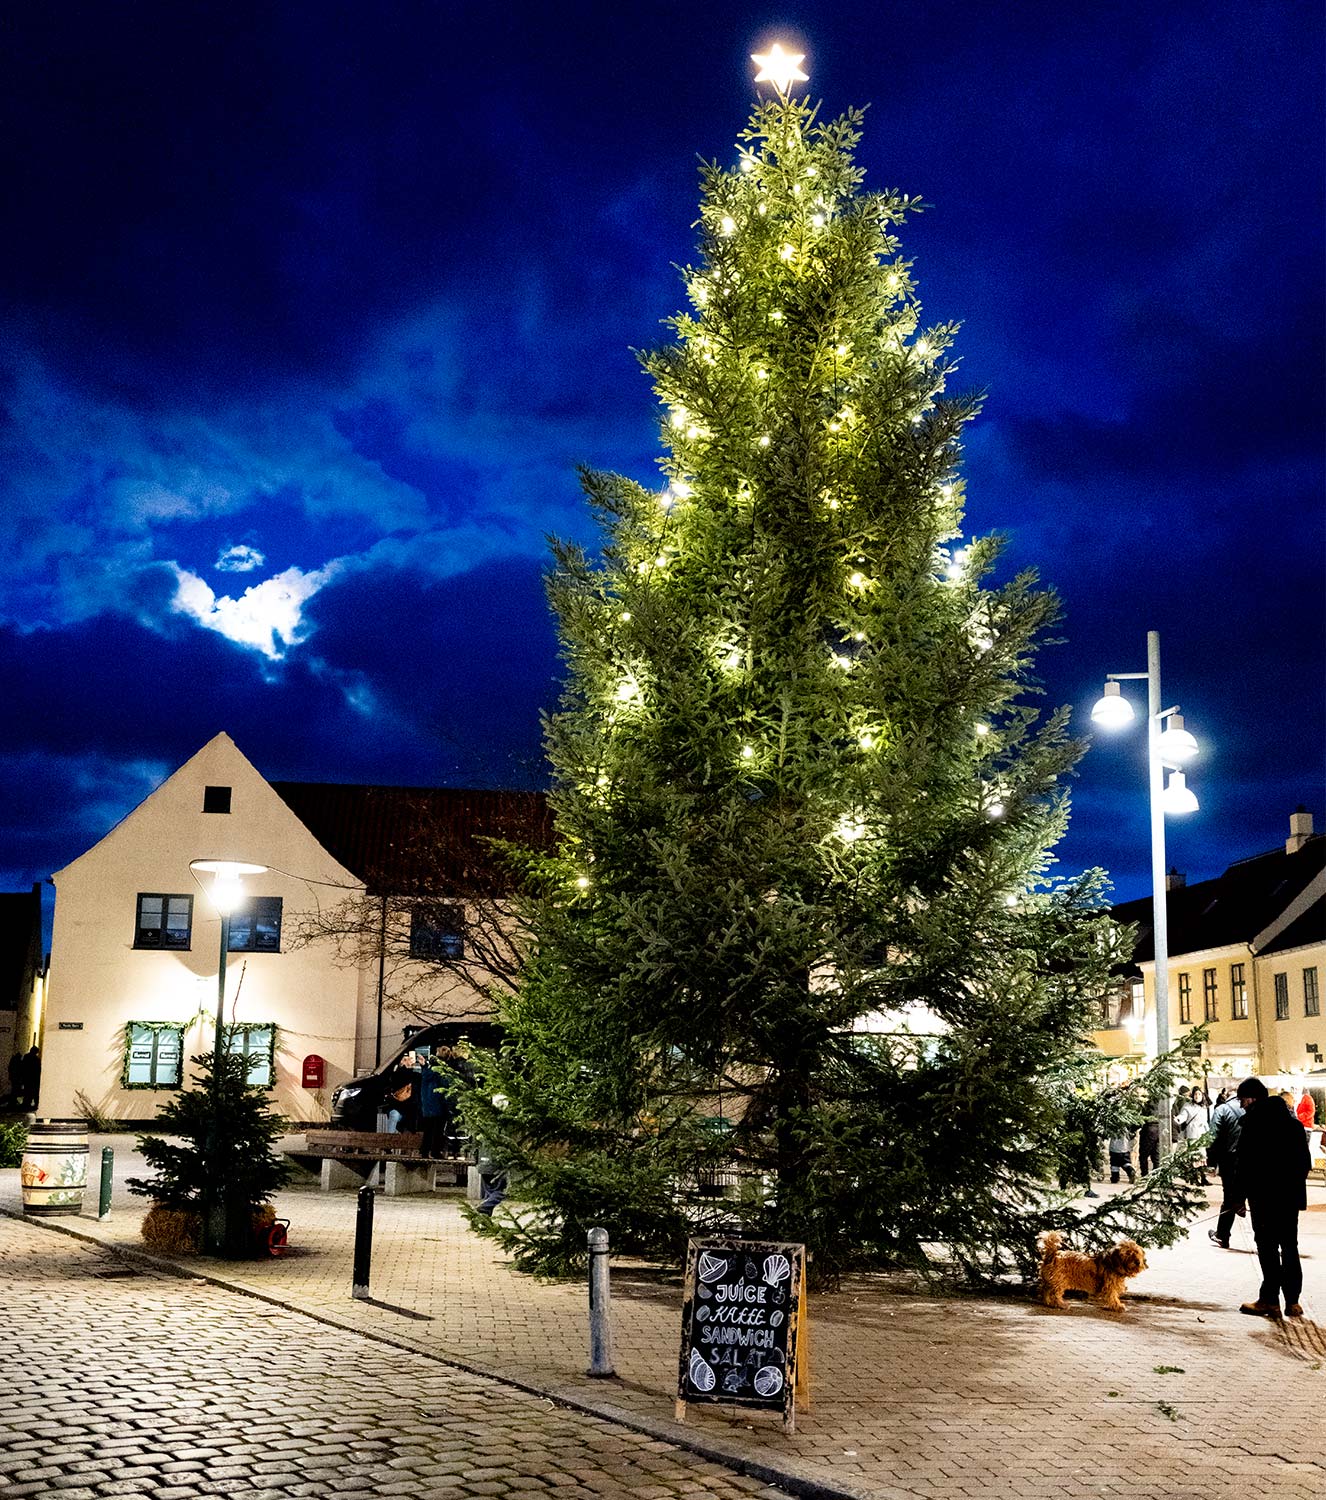 Juletræet lyser op i mørket. Foto: TorbenStender.